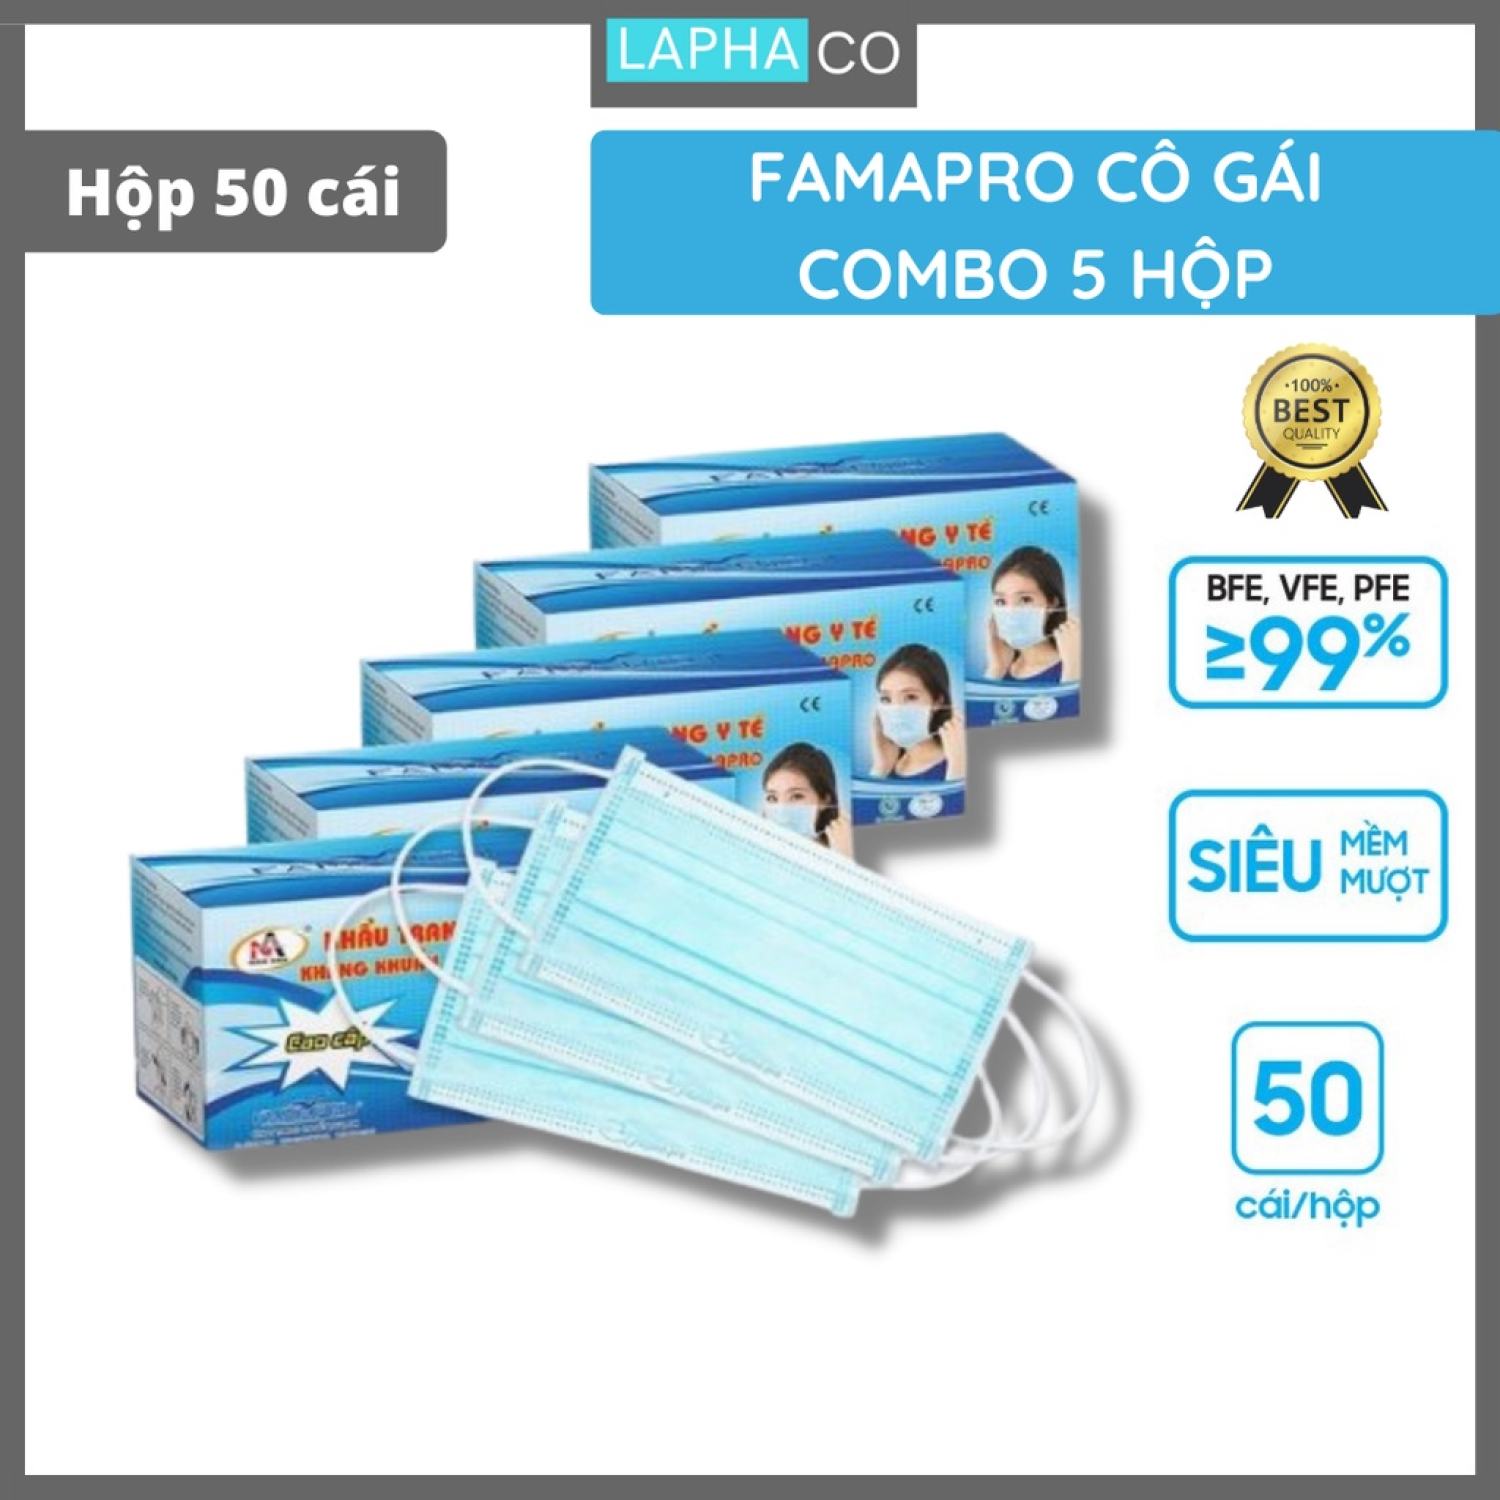 Combo 5 hộp khẩu trang y tế 4 lớp kháng khuẩn Famapro Cô gái ( 50 cái/ hộp)